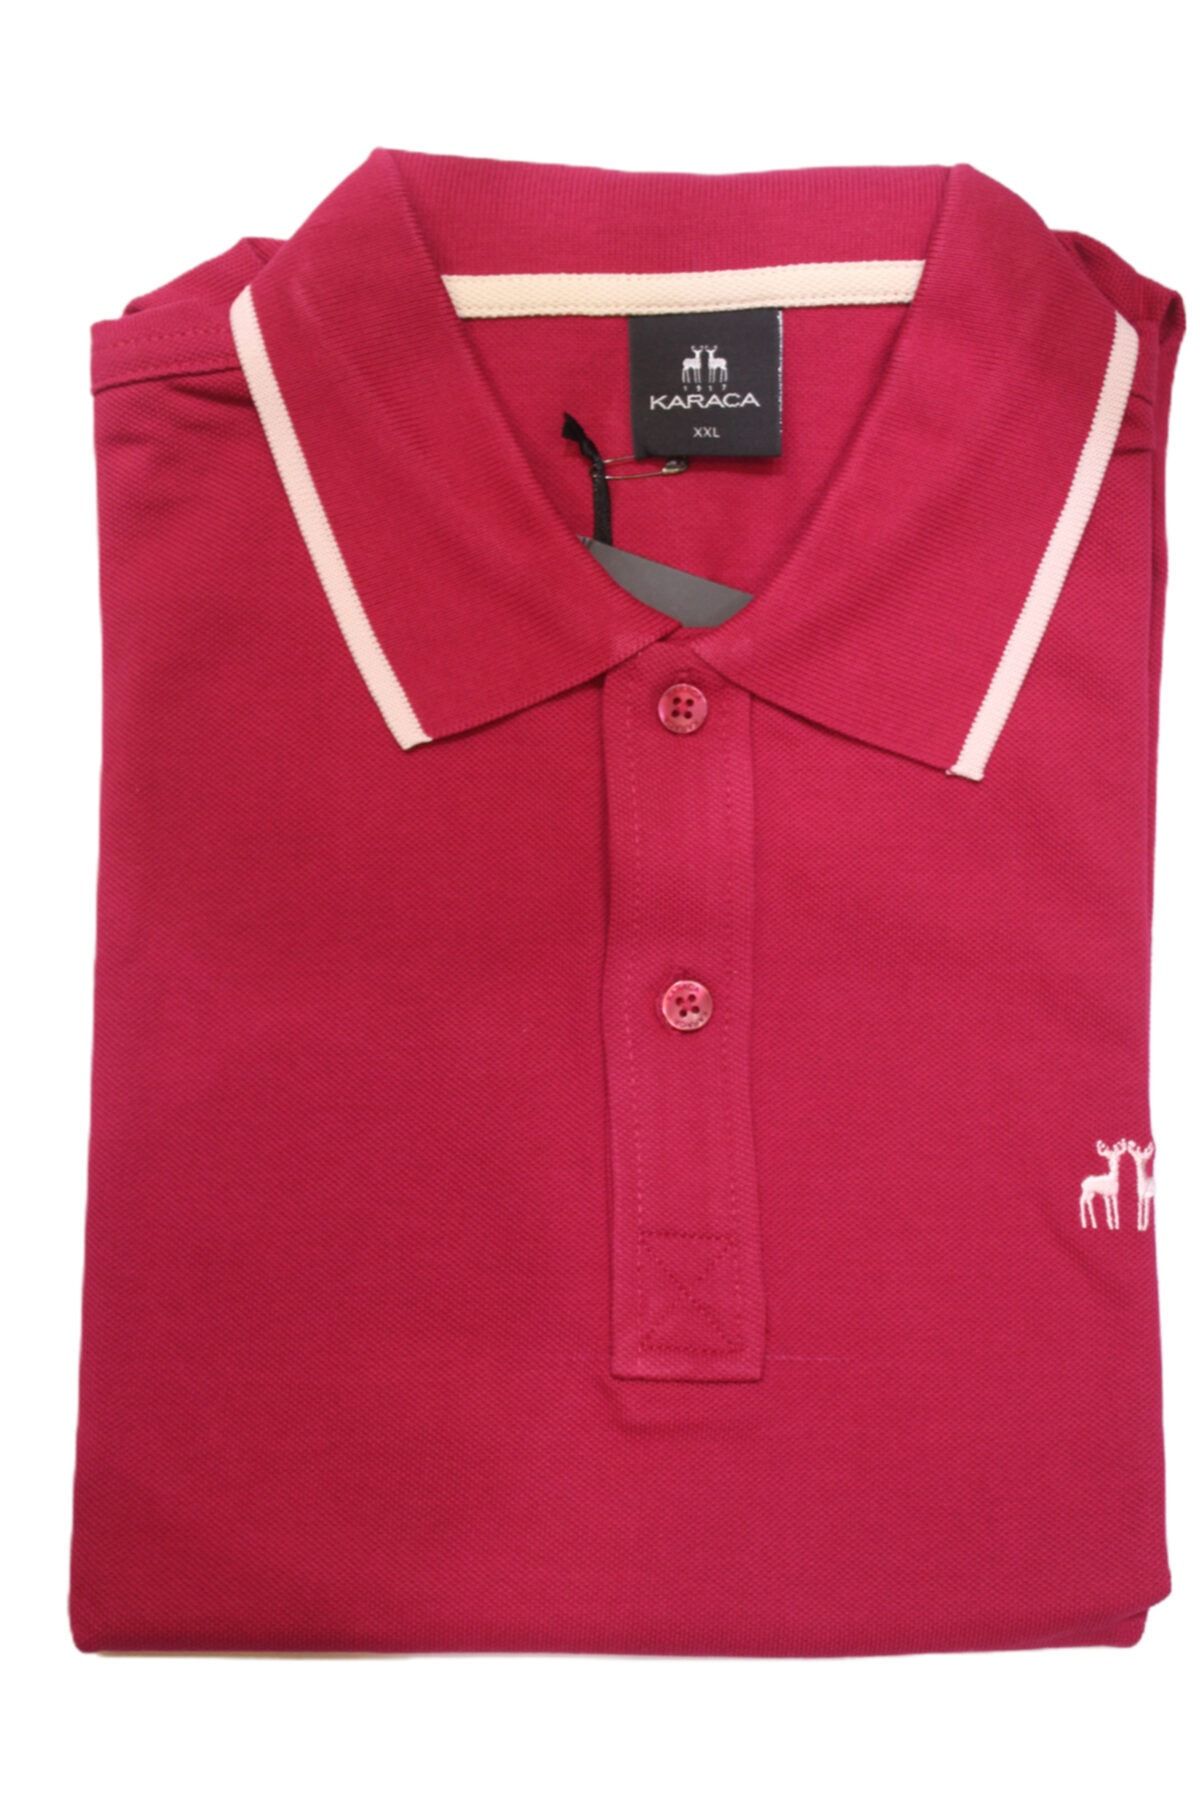 Karaca Düğmeli Polo Yaka T-shirt